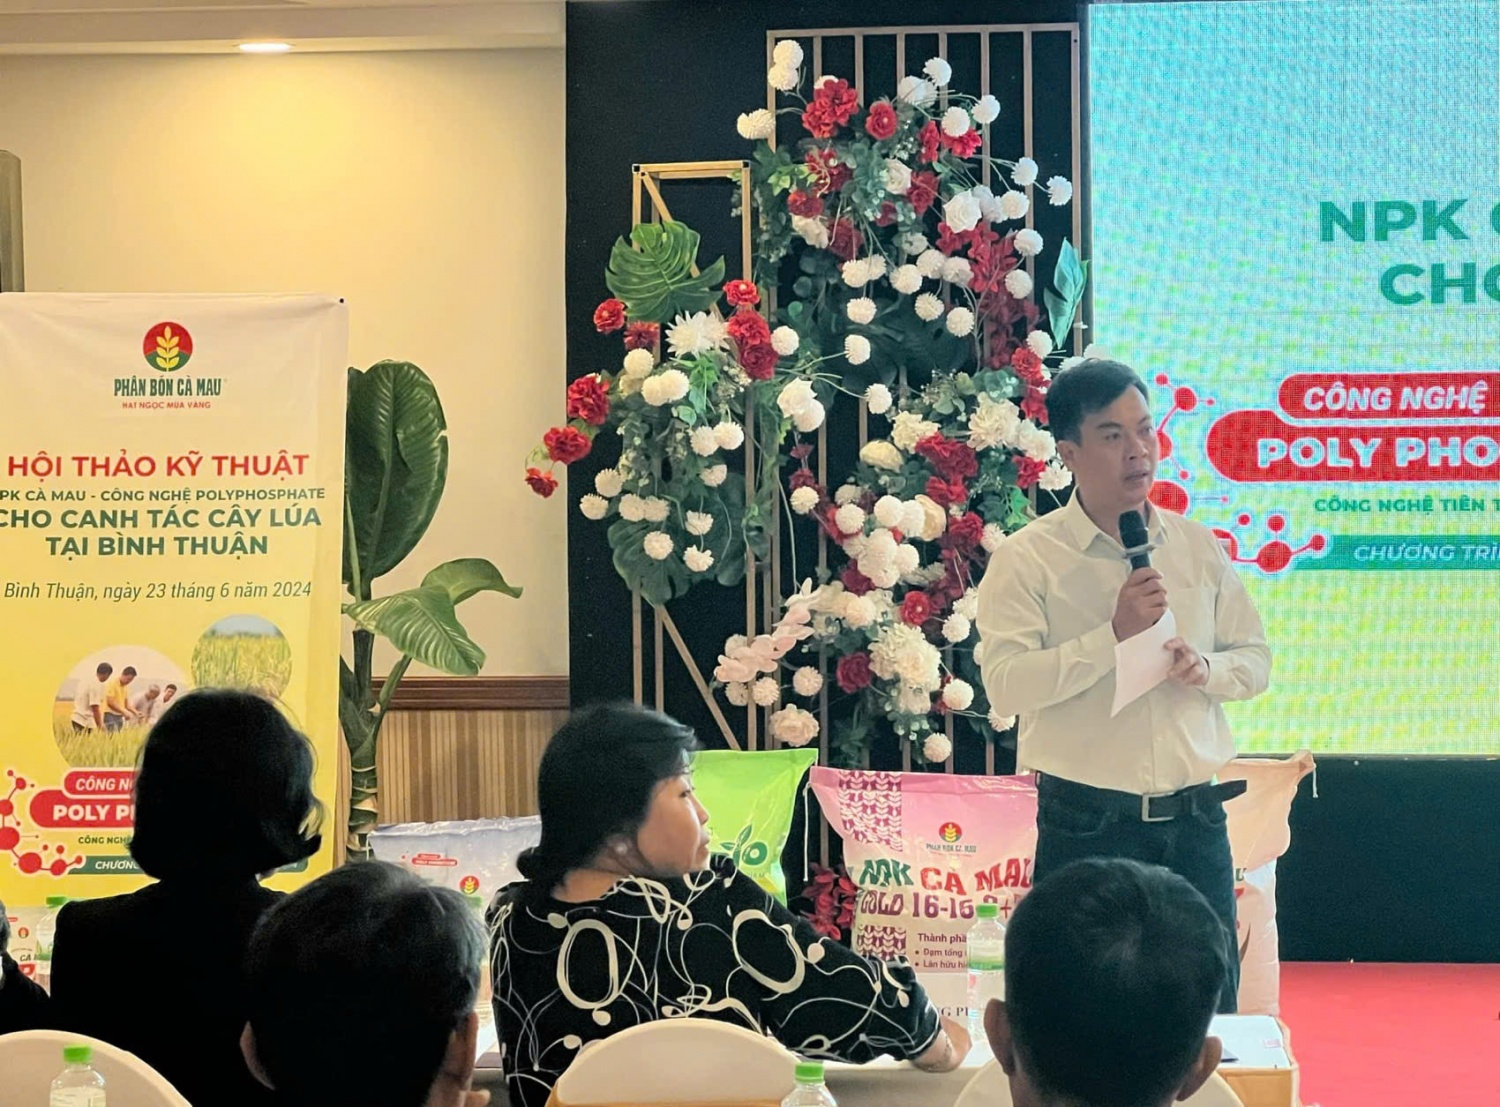 PVCFC tổ chức Hội thảo “NPK Cà Mau - Công nghệ Polyphosphate cho canh tác cây lúa tại Bình Thuận””